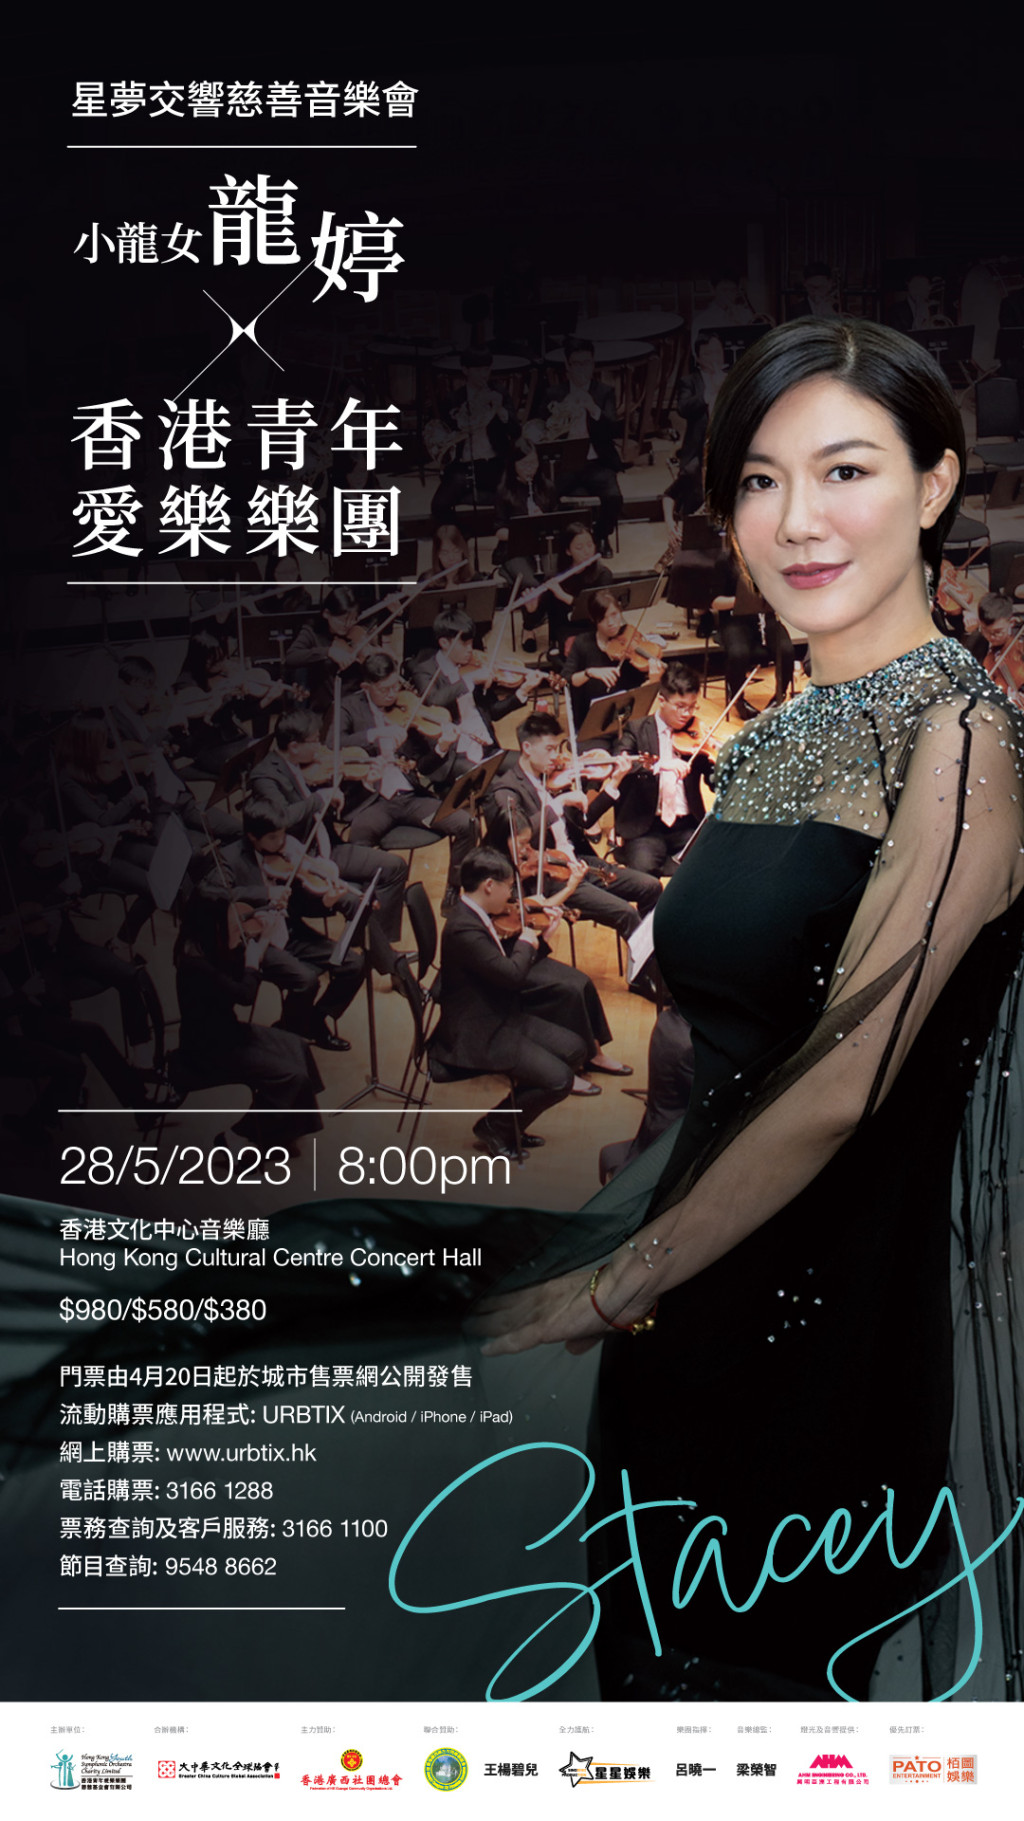 龍婷今年5月28日與香港青年愛樂樂團合作舉行「星夢交響慈善音樂會」，演出地點是香港文化中心，門票售價分為980元、580元及380元。